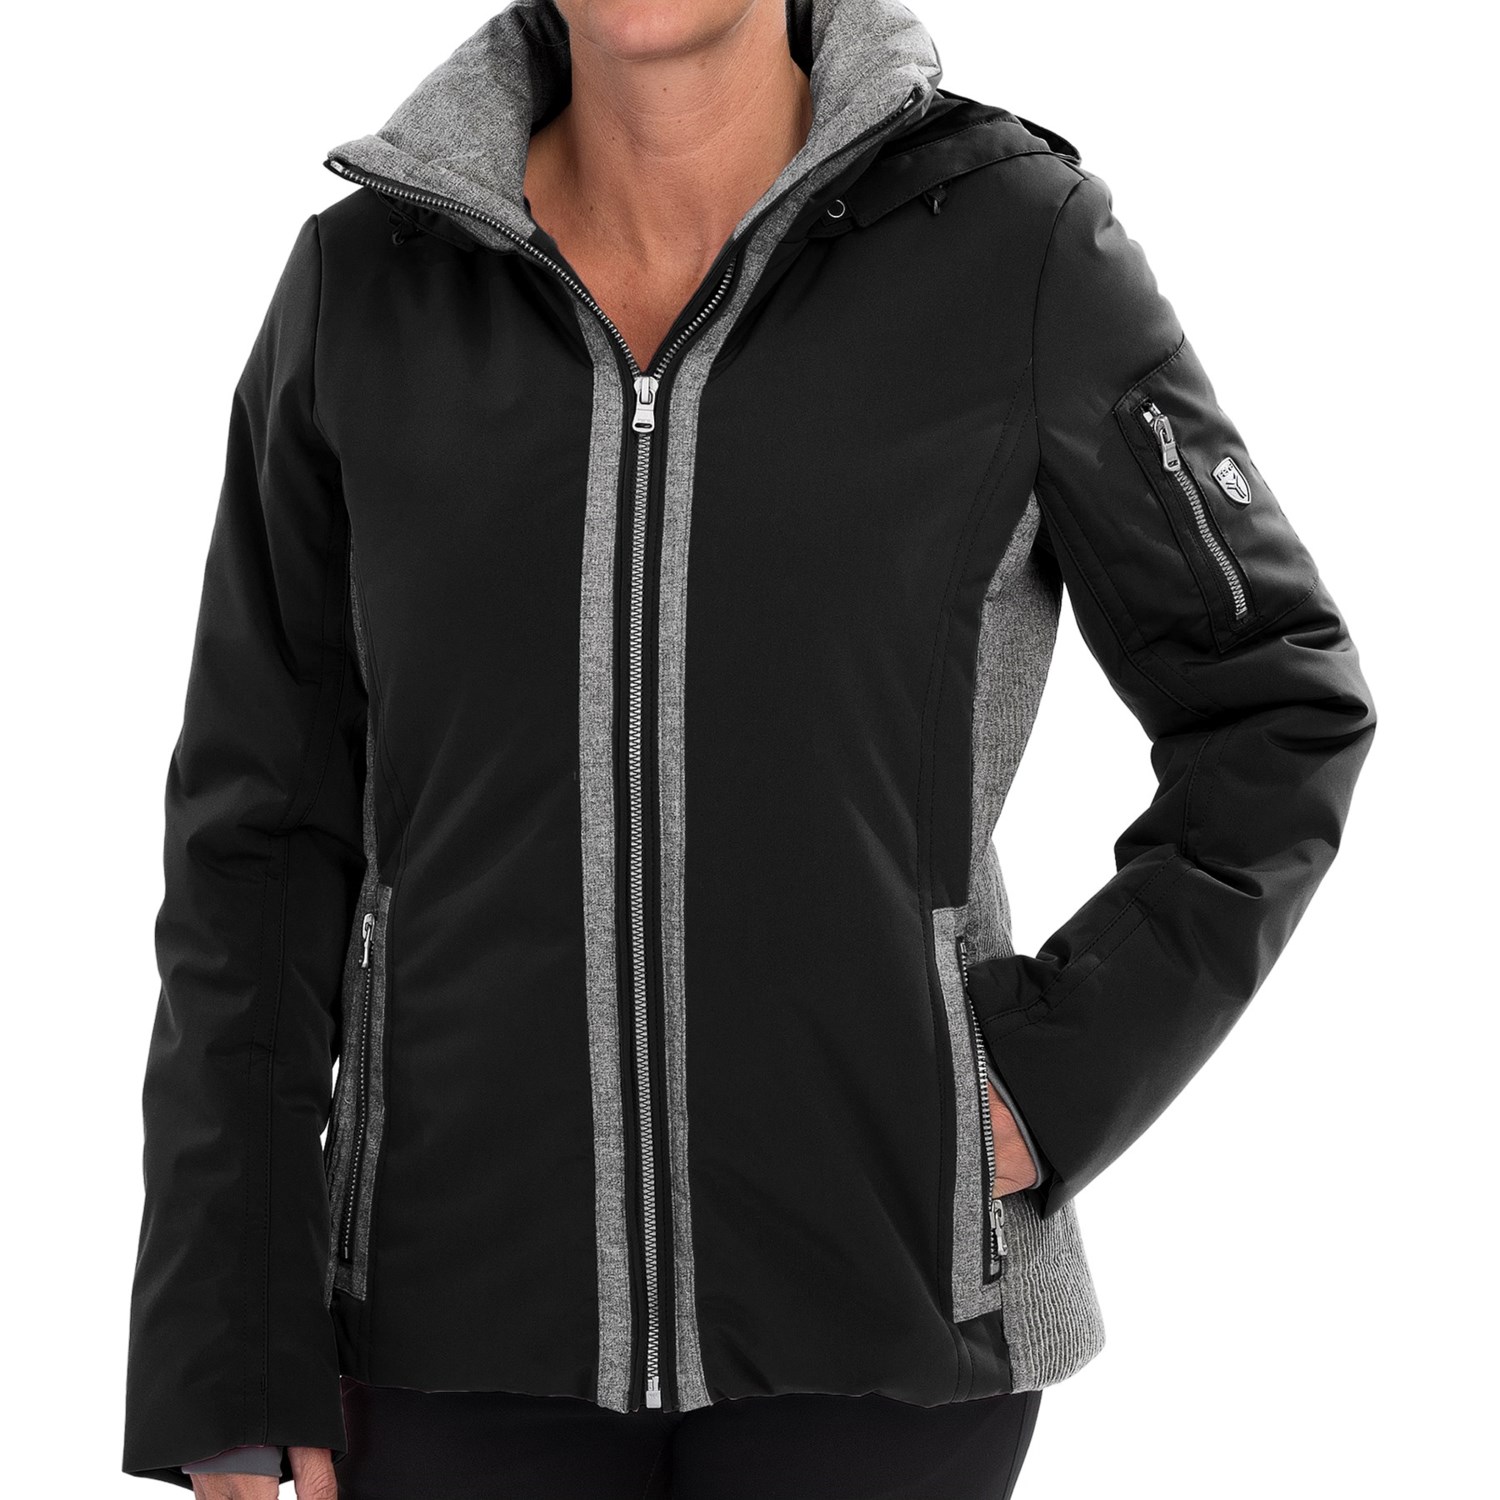 Fera Danielle Ski Jacket - Waterproof, Insulated (For Women) in Black